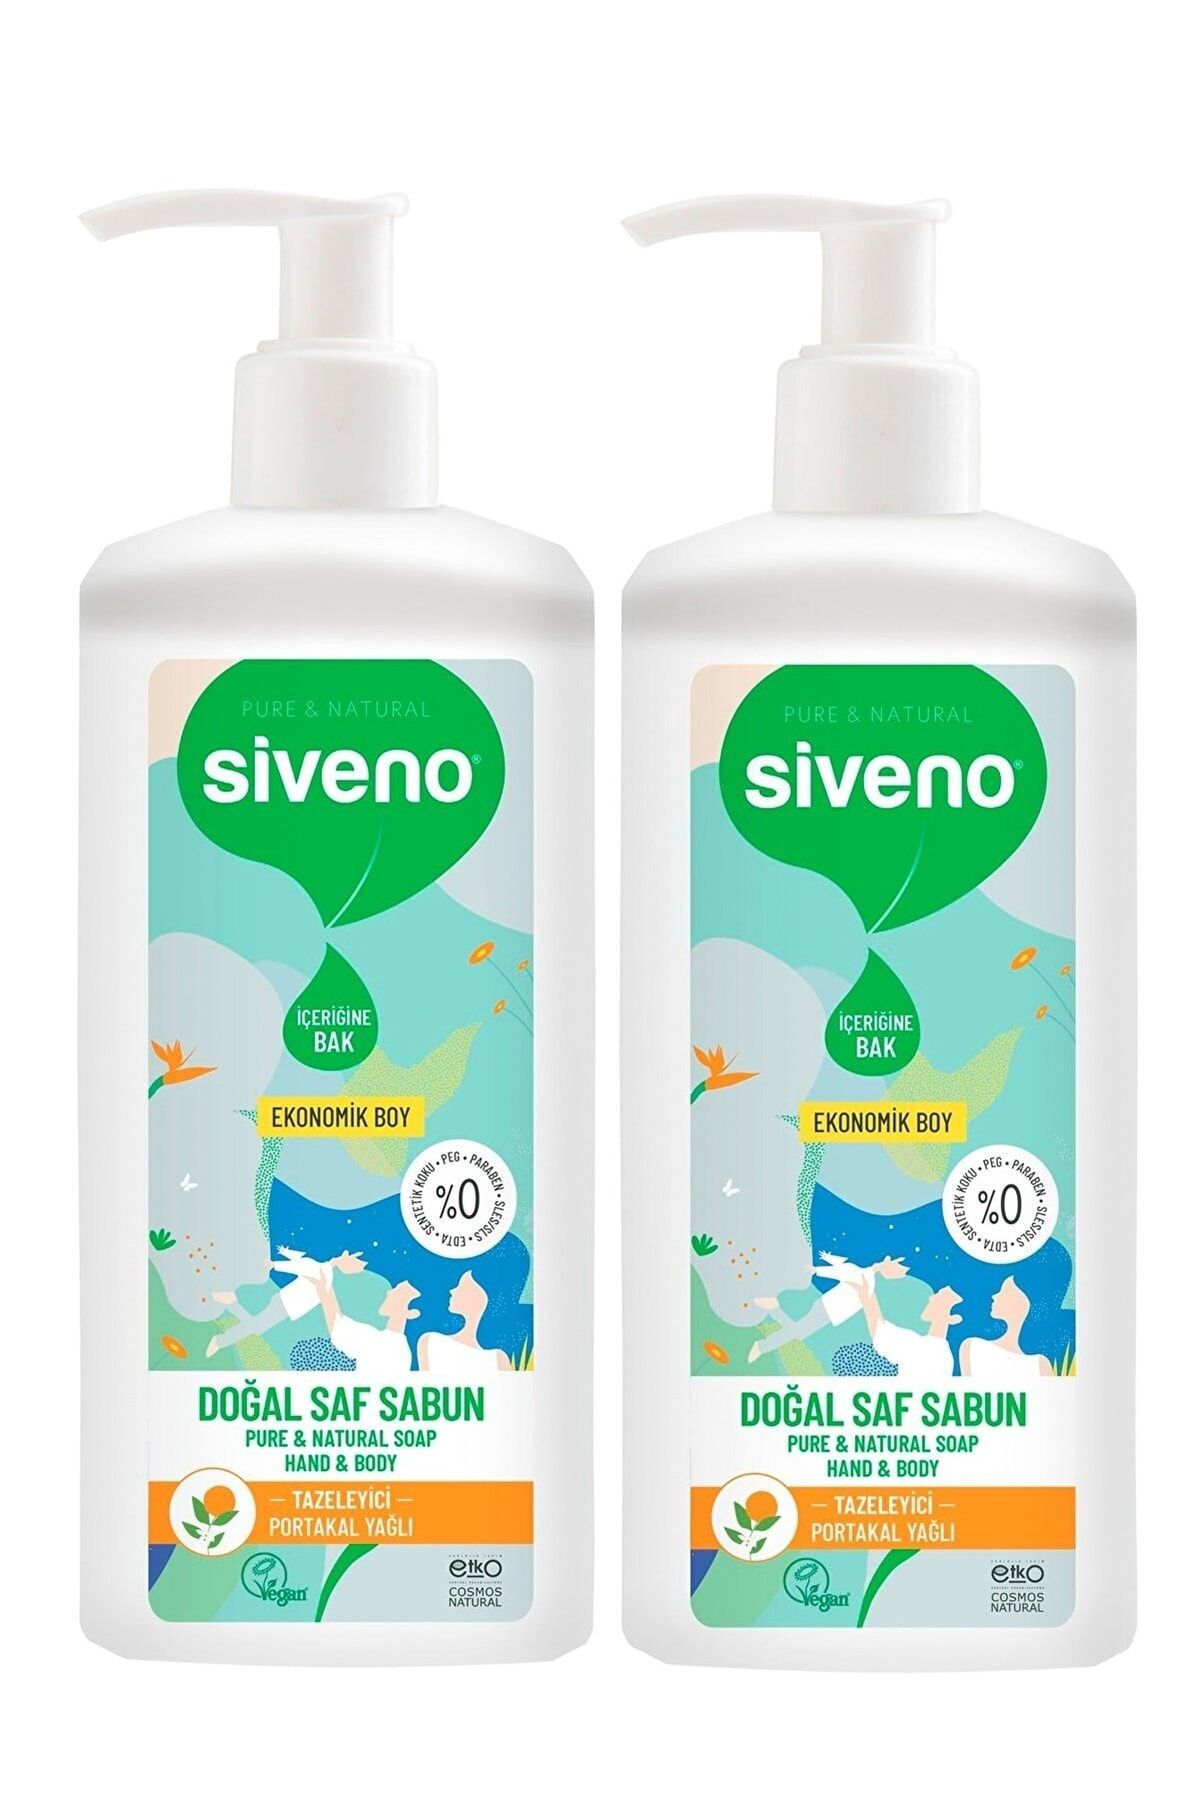 Siveno Portakal Yağlı Doğal Sıvı Sabun 1 Lt X 2 Adet